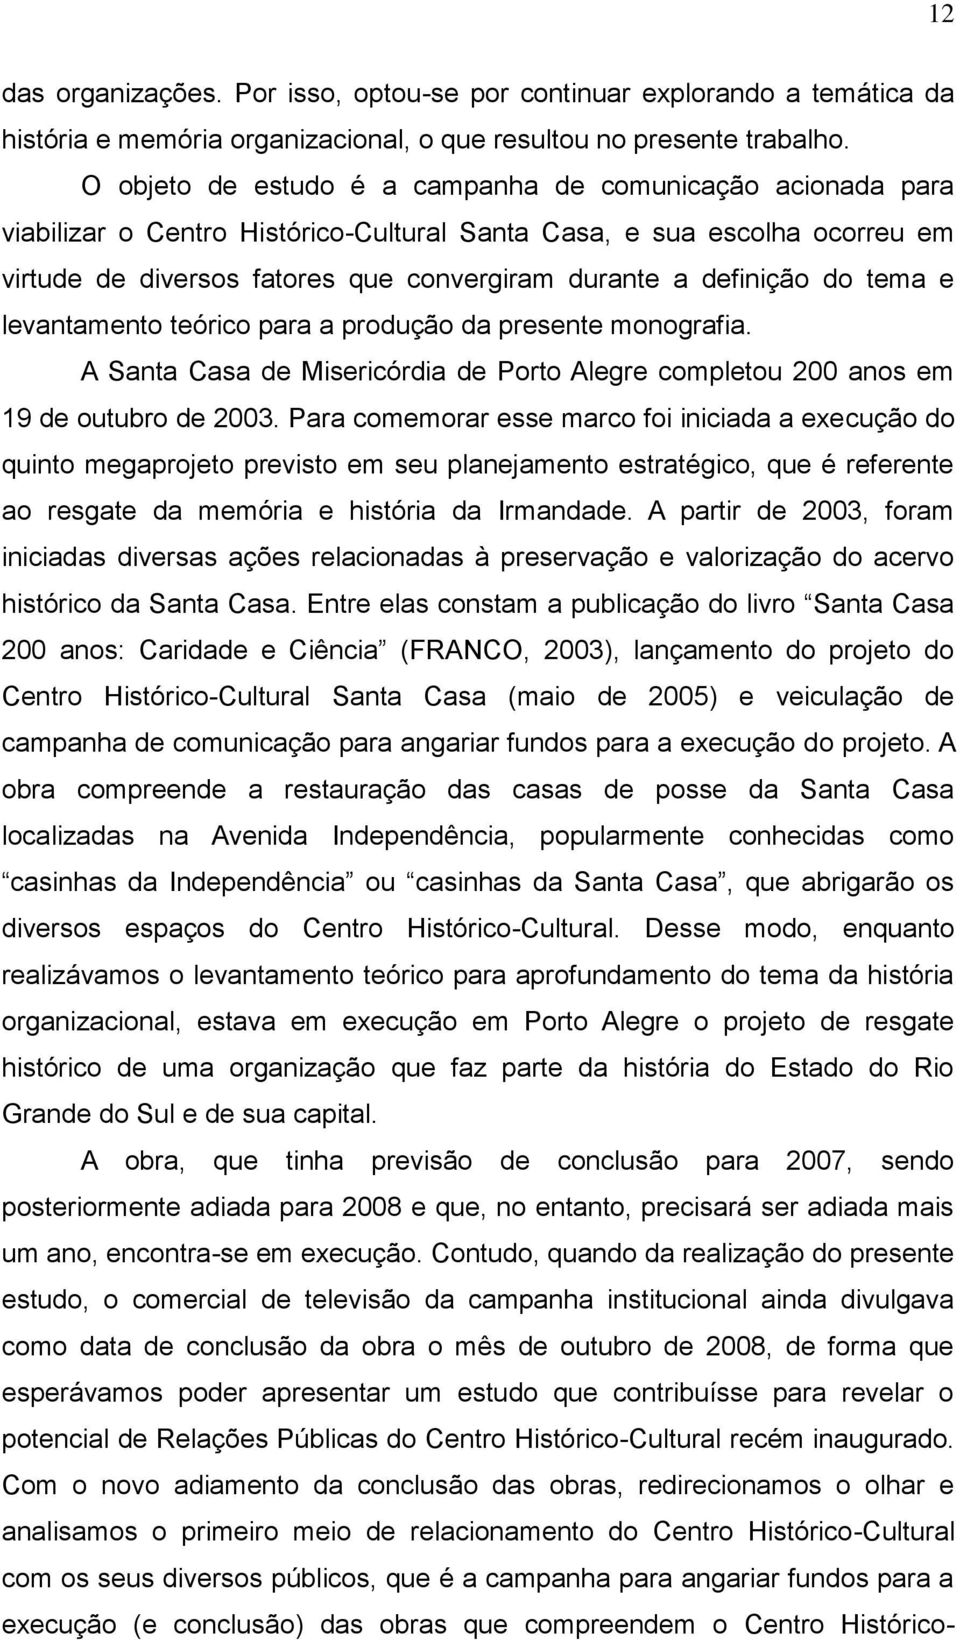 definição do tema e levantamento teórico para a produção da presente monografia. A Santa Casa de Misericórdia de Porto Alegre completou 200 anos em 19 de outubro de 2003.